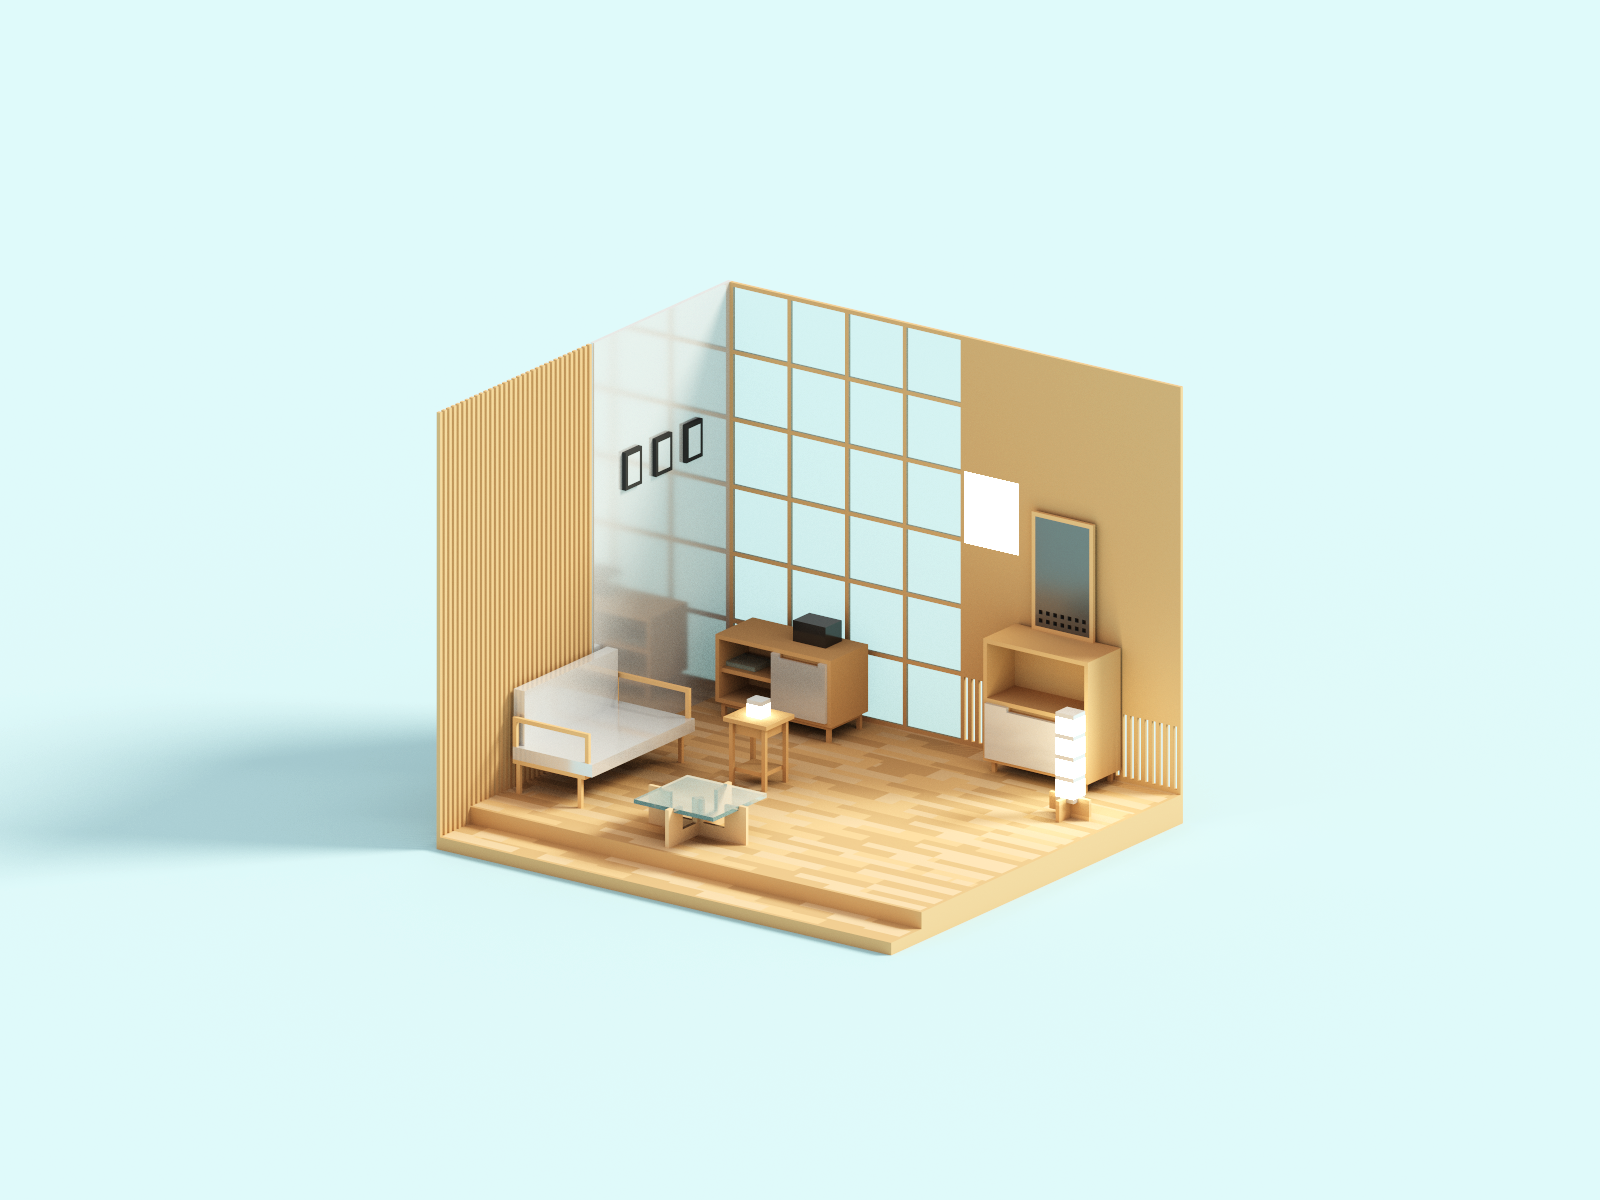 Minimal room minimal furniture room interior voxel 3d illustration